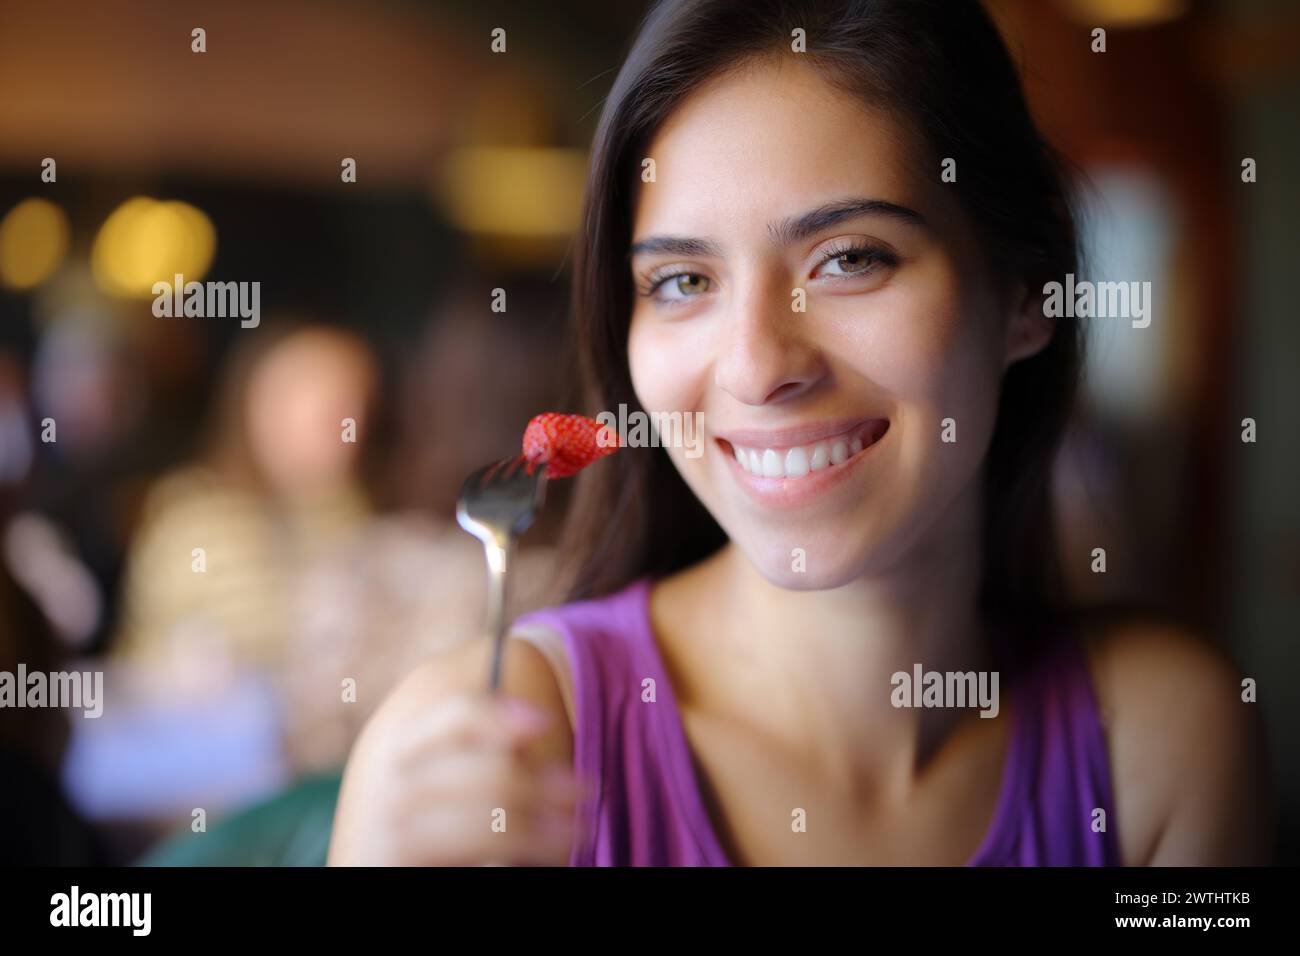 Femme heureuse posant manger de la fraise dans un intérieur de restaurant Banque D'Images